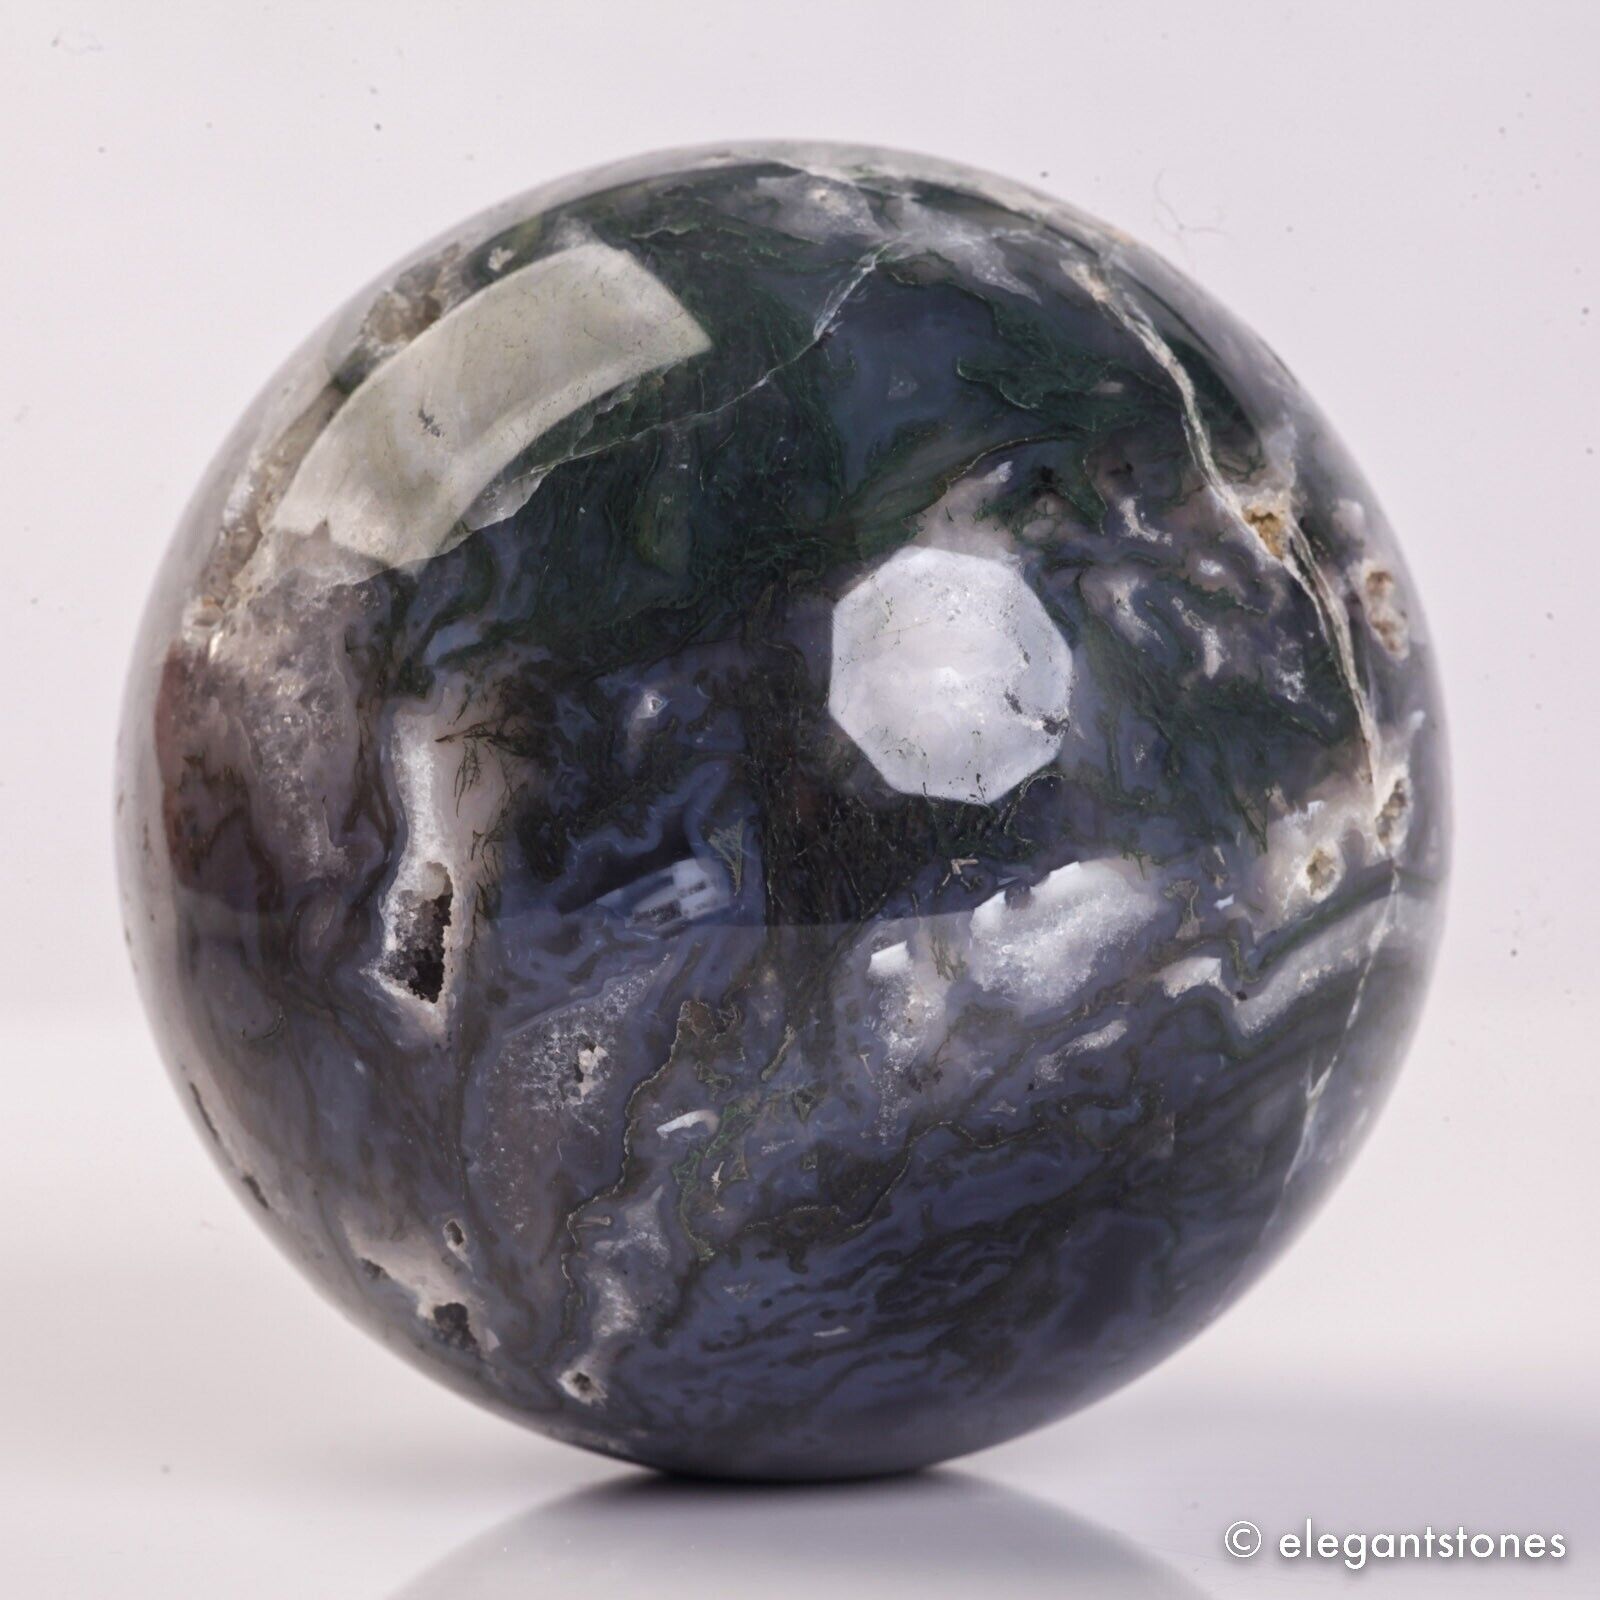 400g 67mm Natural Green Moss Agate Crystal Geode Sphere Quartz Healing Ball